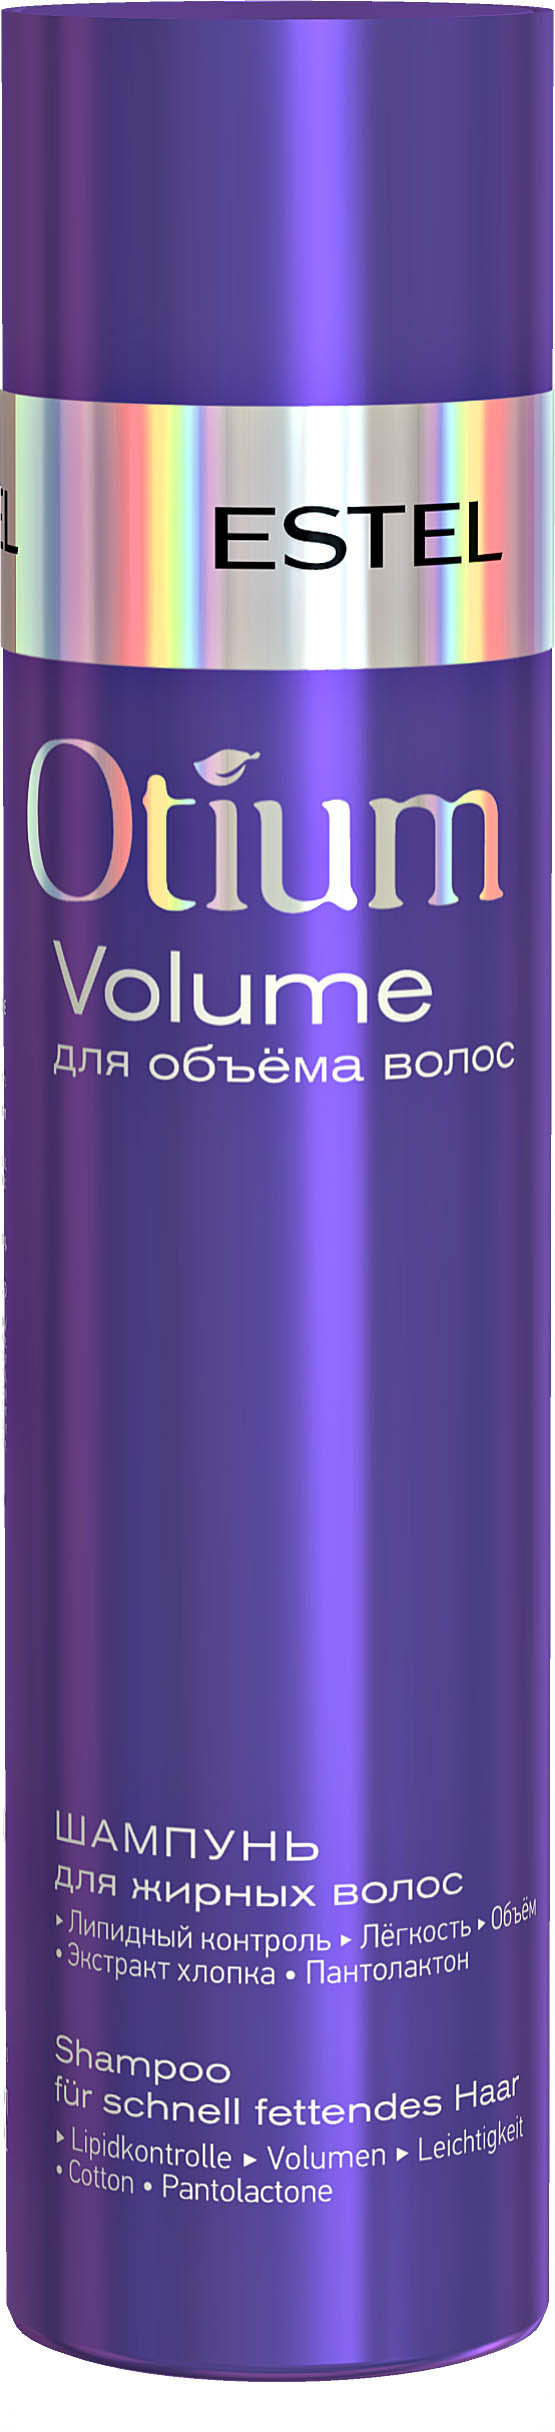 Шампунь для объёма жирных волос OTIUM VOLUME, 250 мл OTM.20